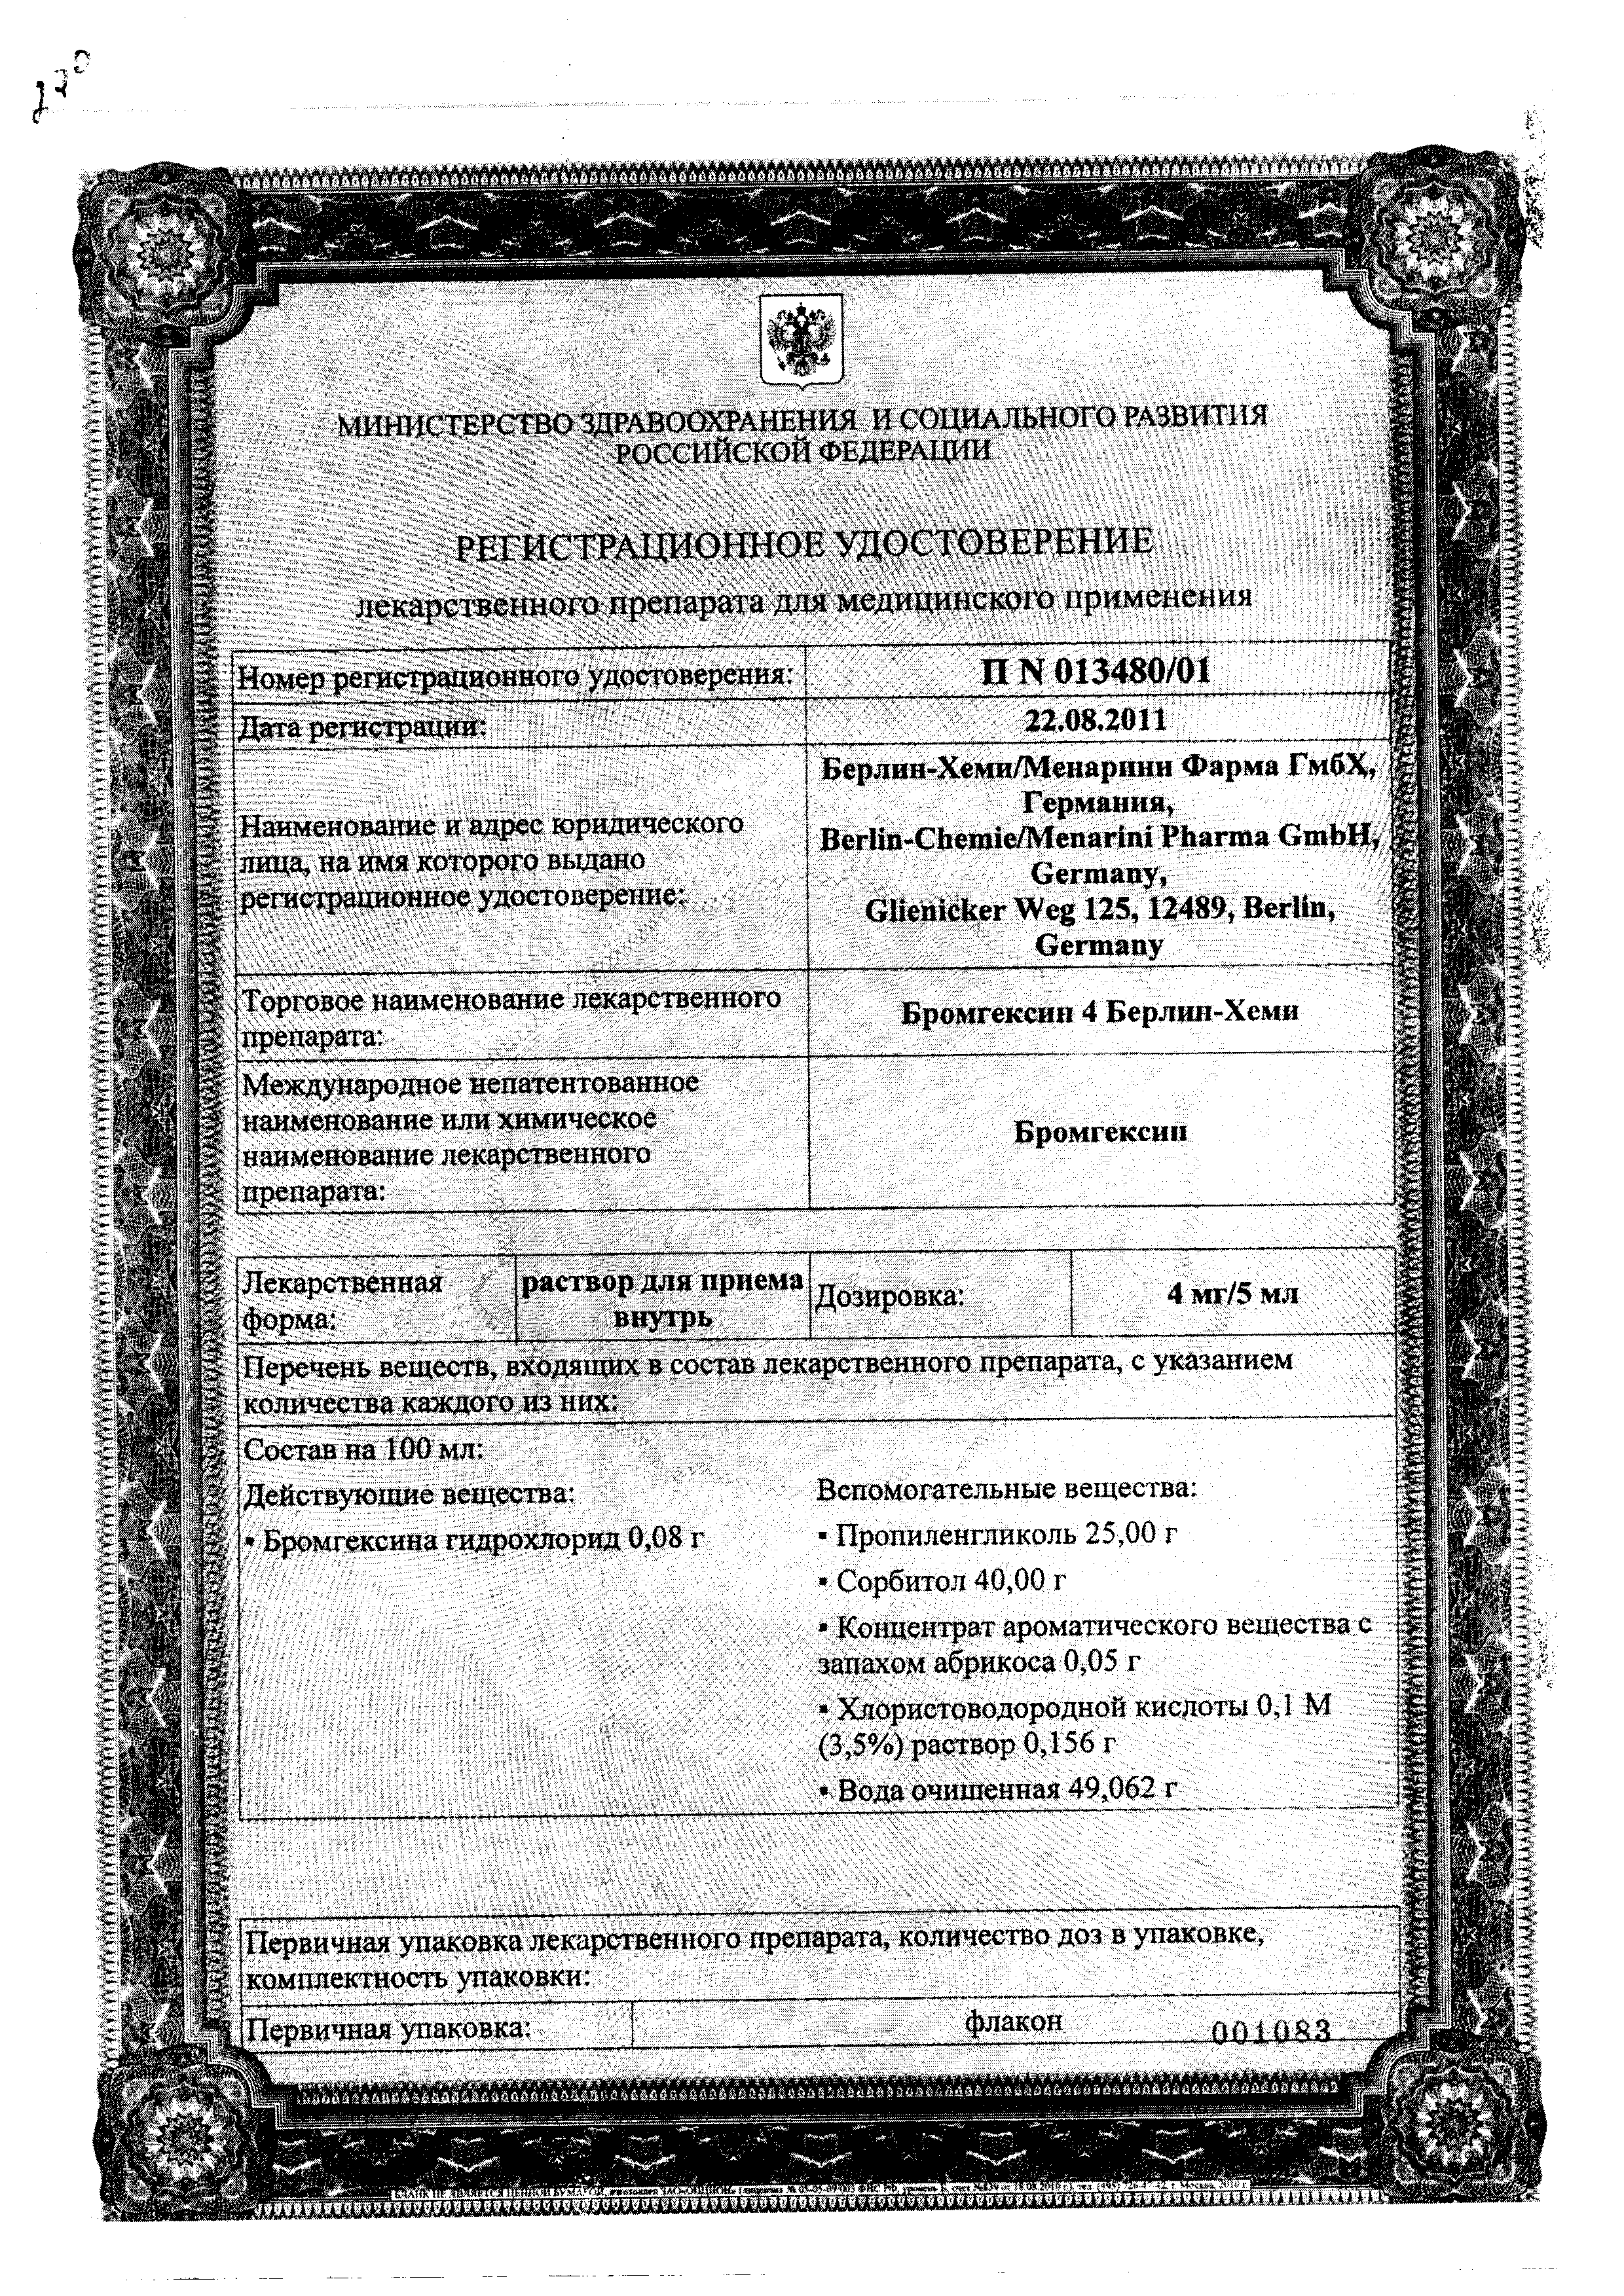 Бромгексин 4 Берлин-Хеми сертификат